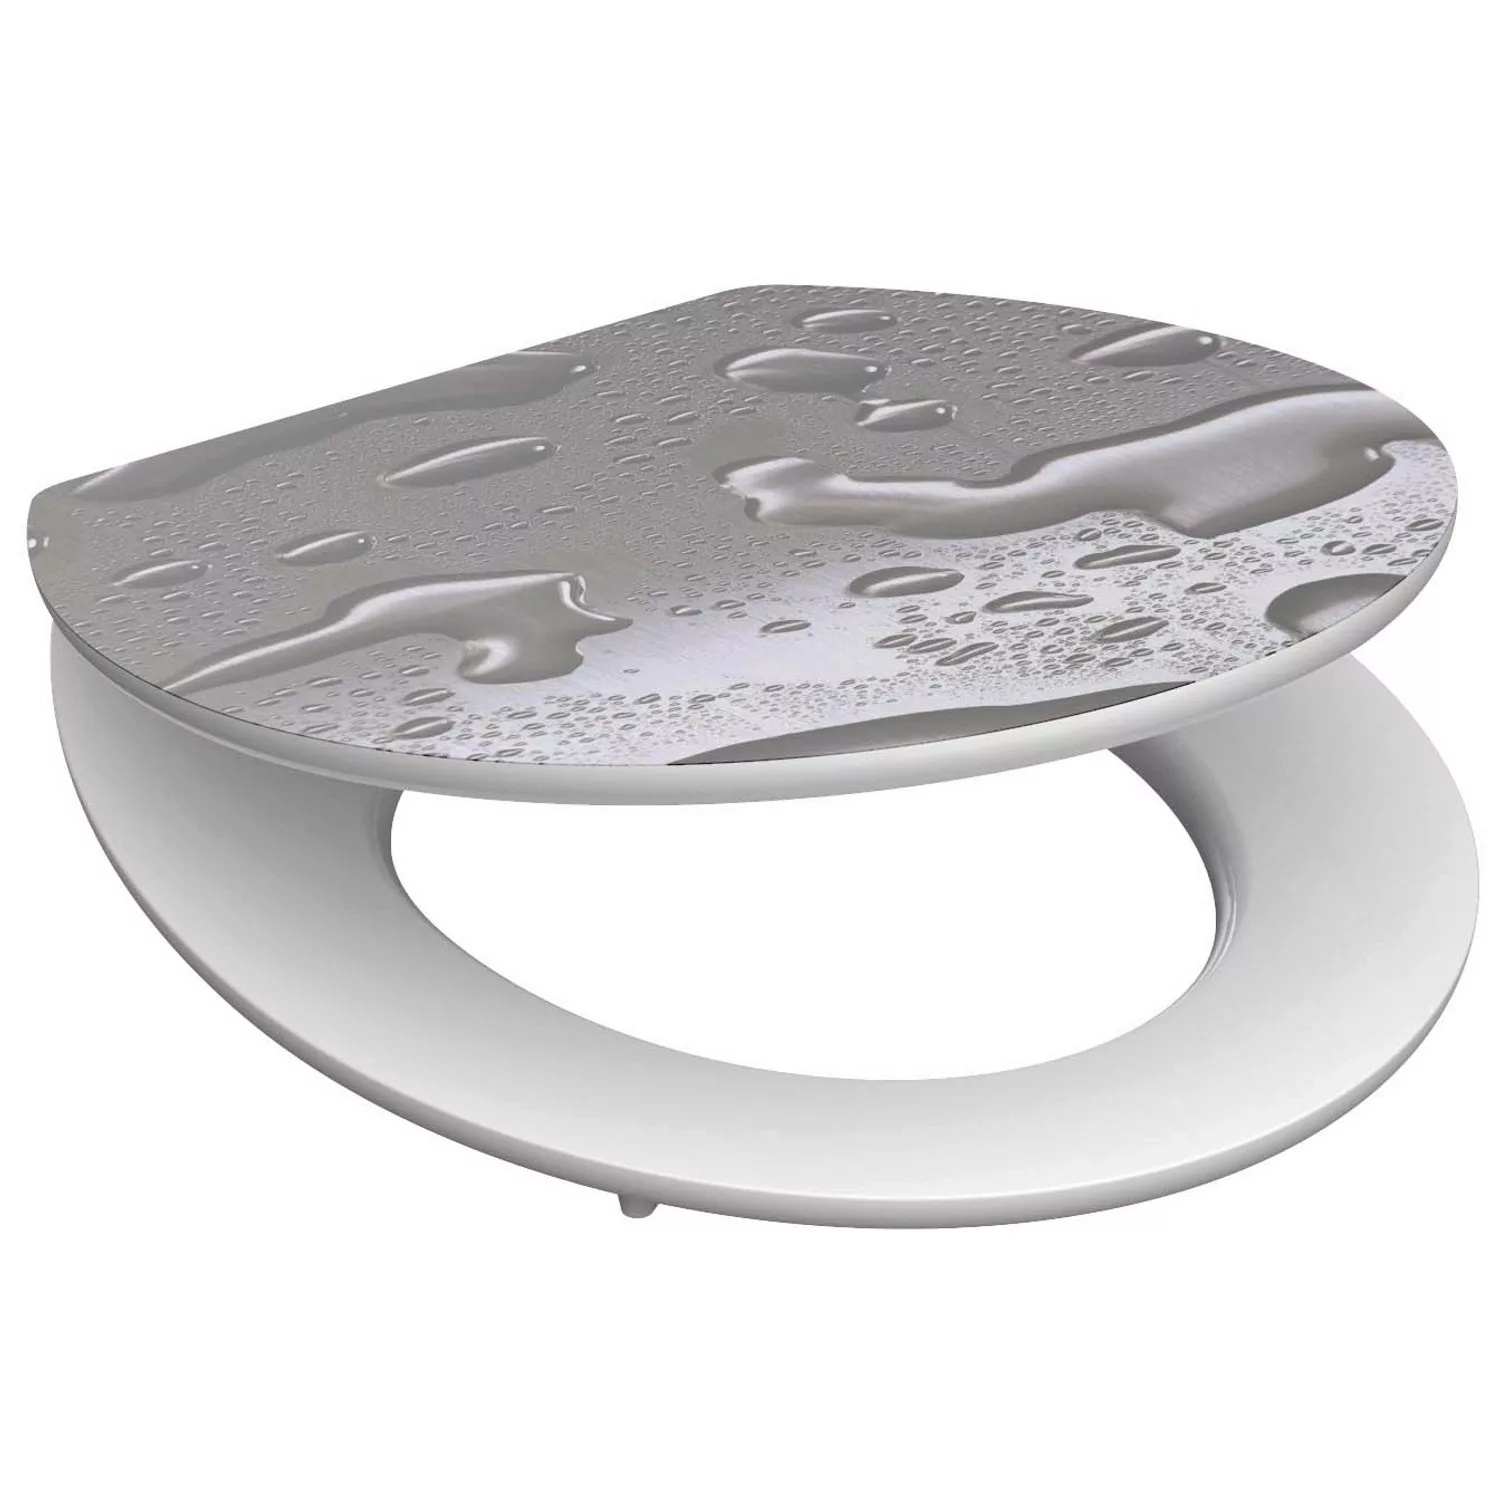 Schütte WC-Sitz »Grey Steel« günstig online kaufen